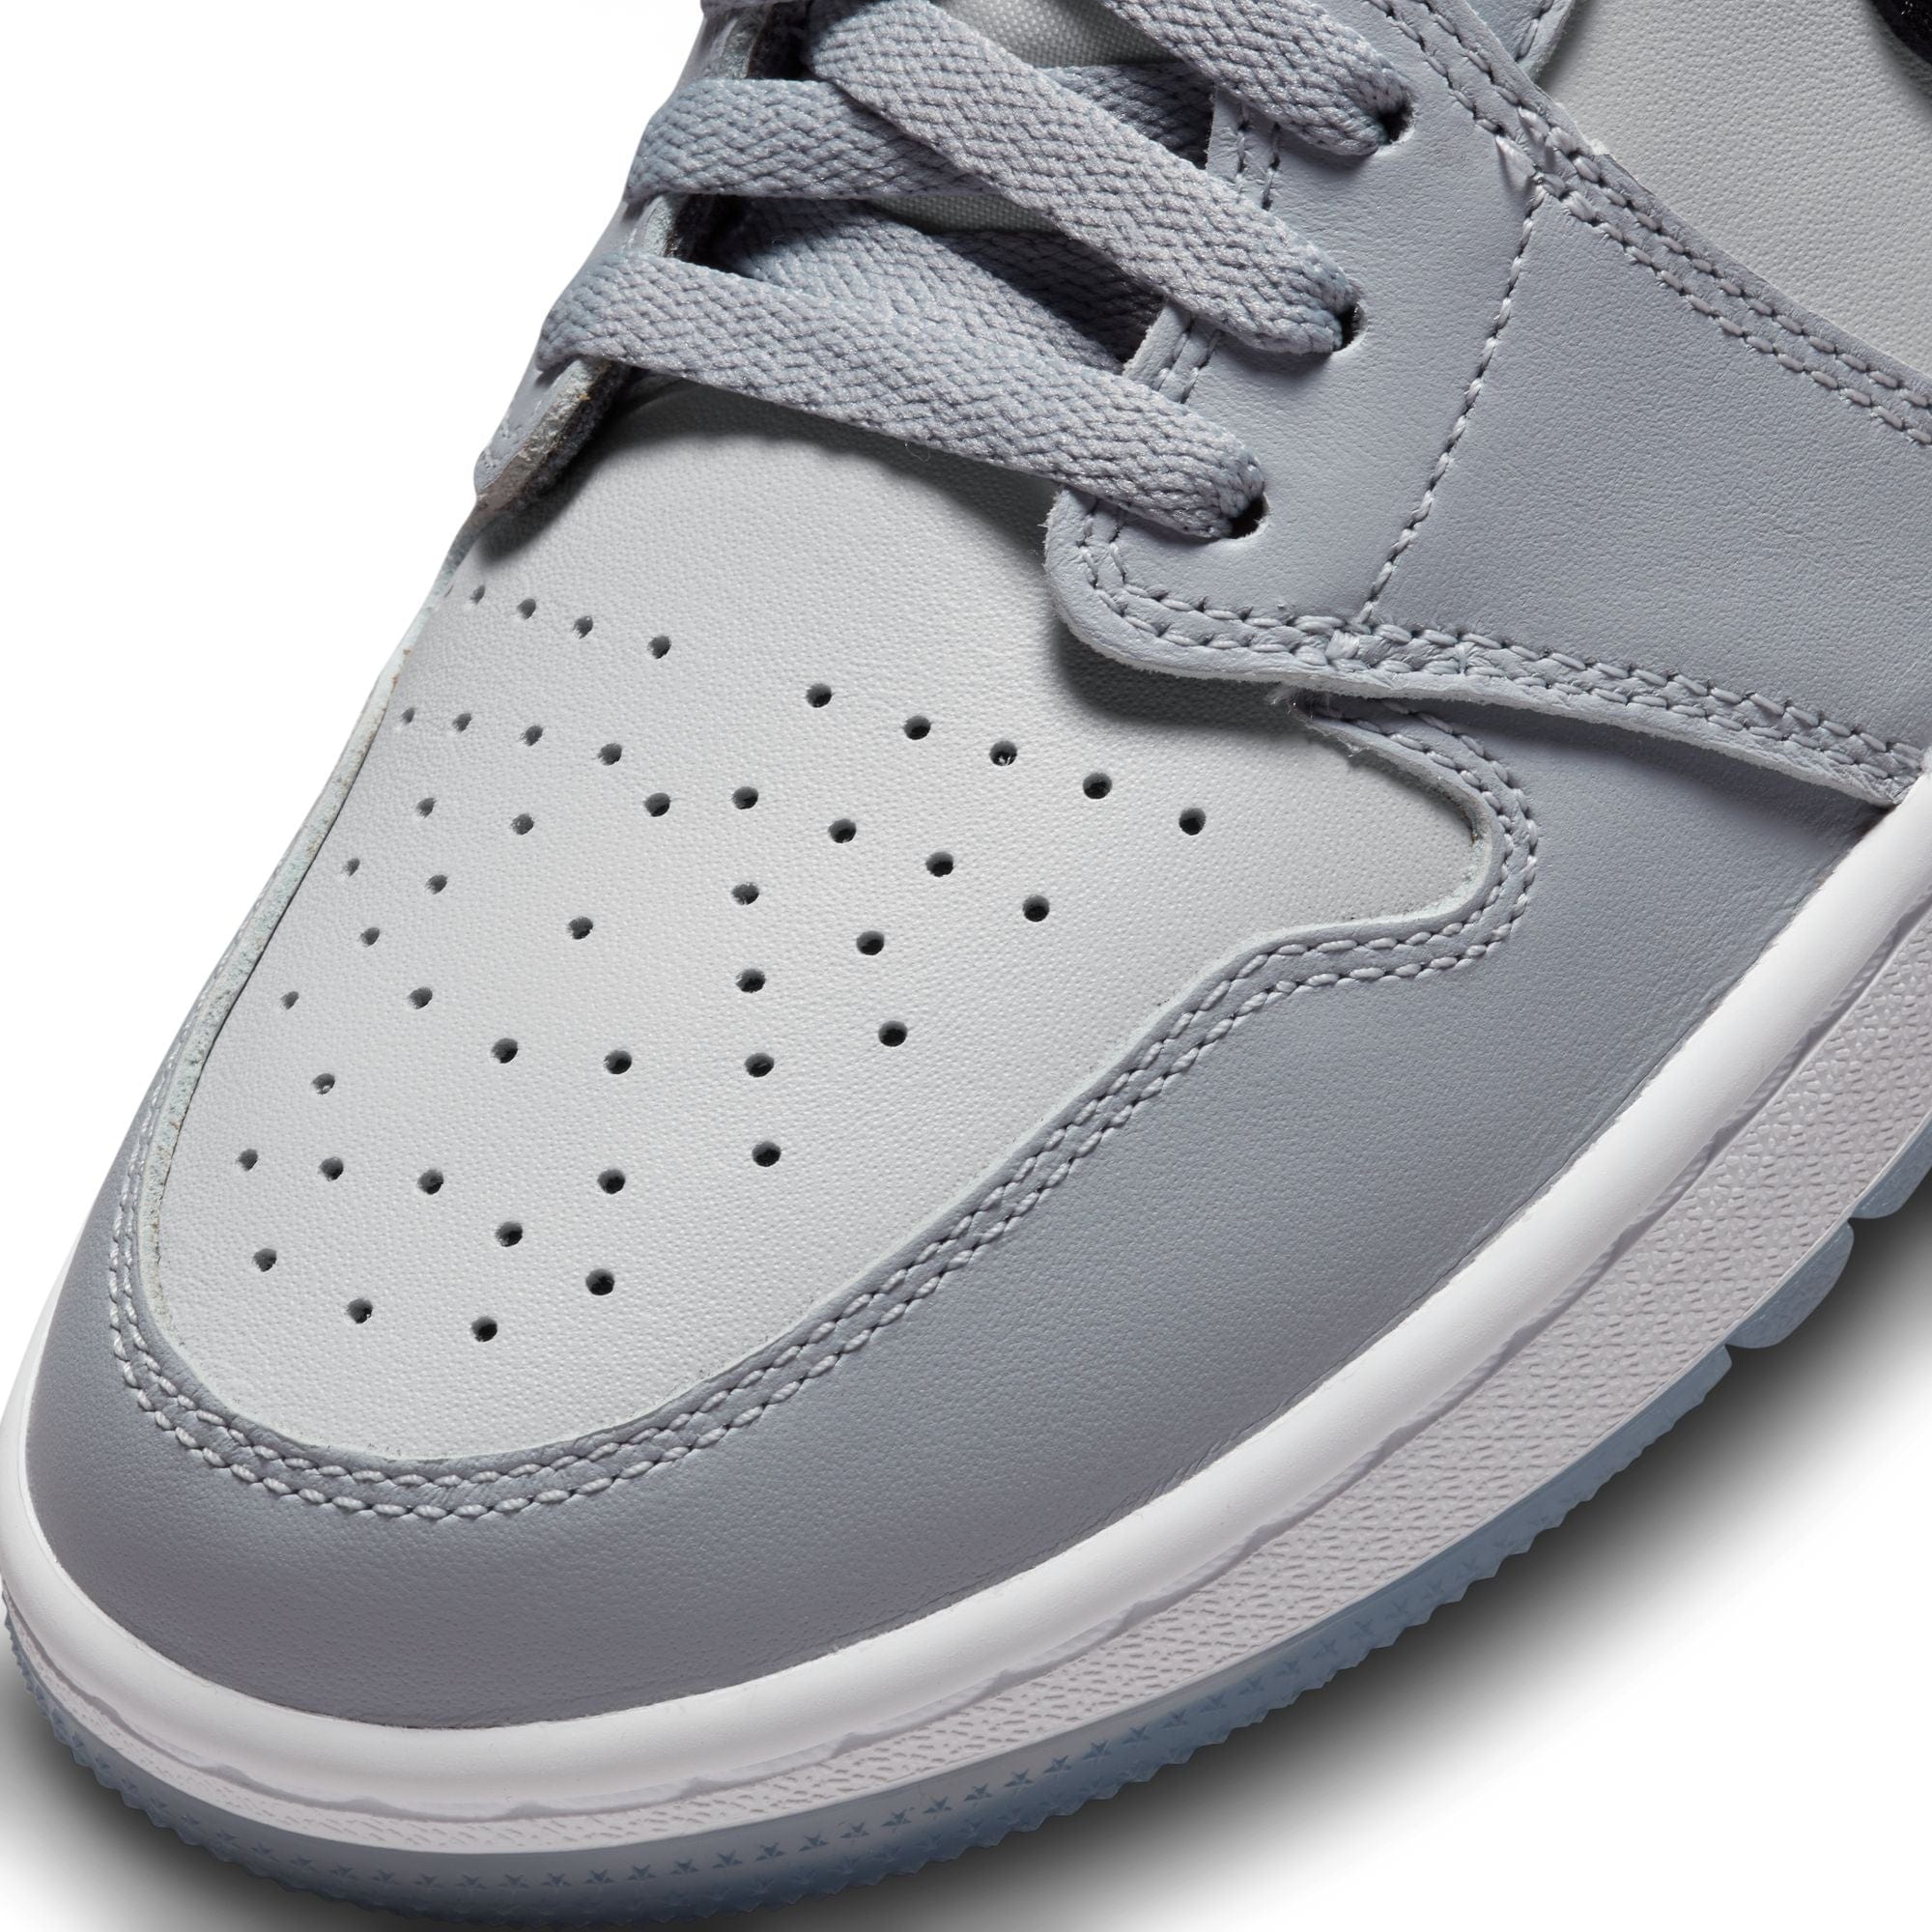 Air Jordan 1 Low G product image